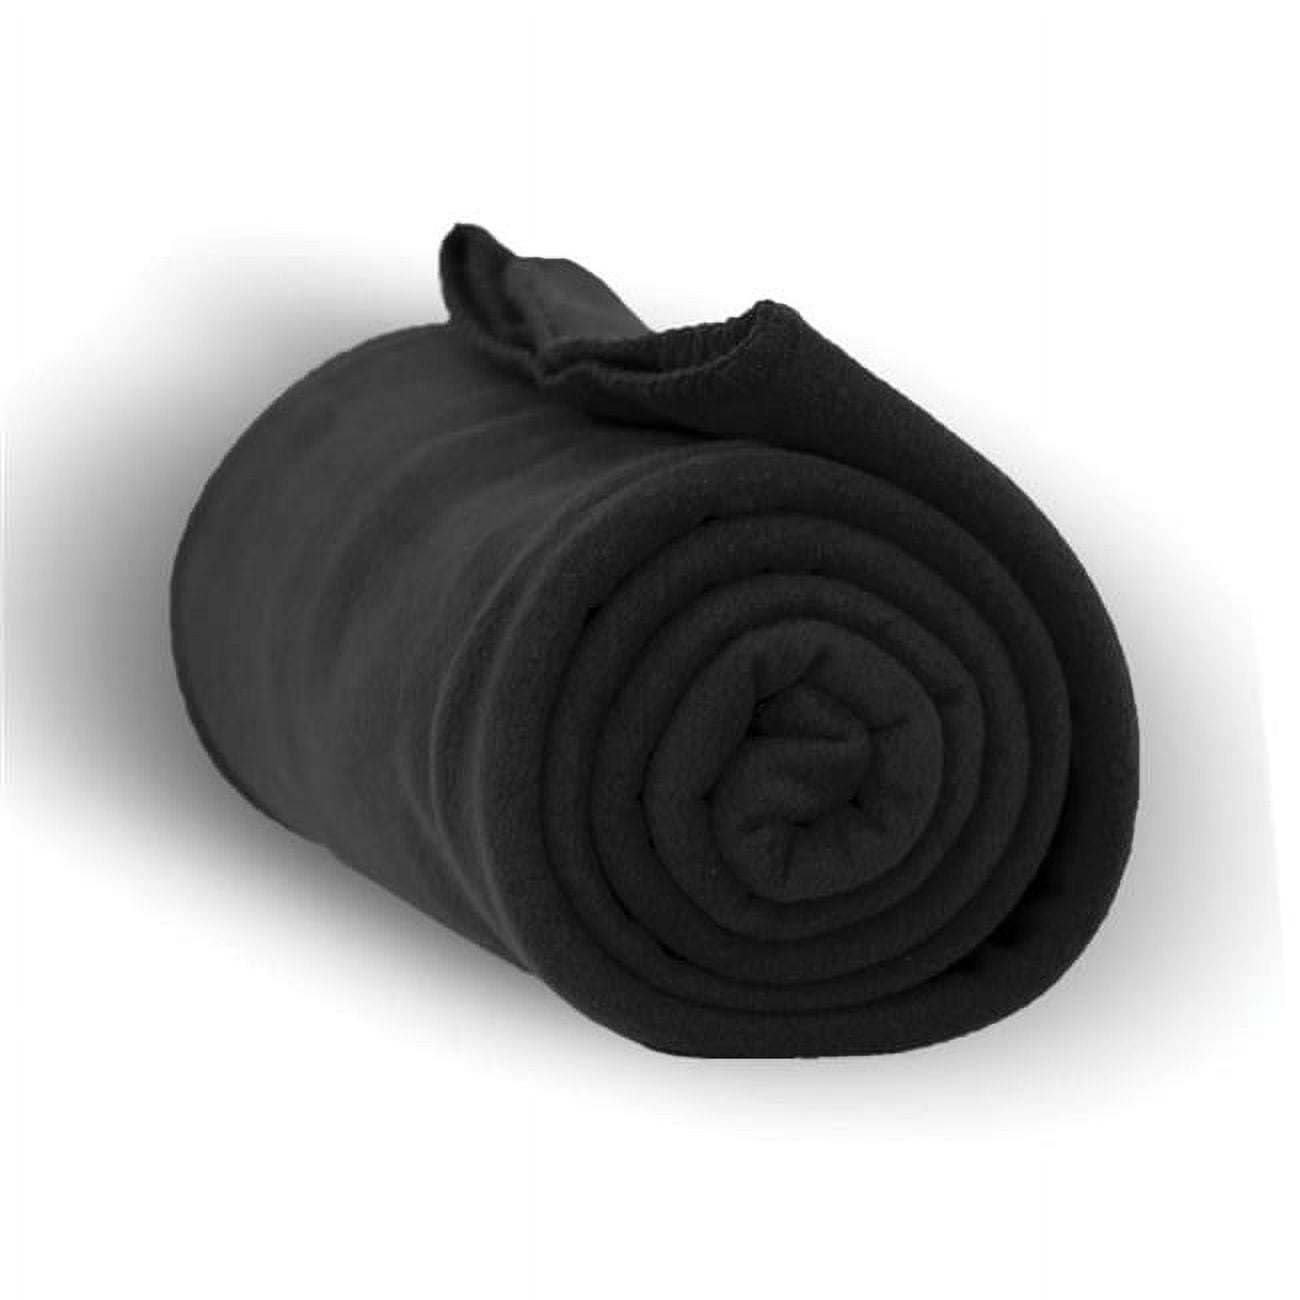 2327044 50 X 60 In. Heavy Weight Fleece Blanket Throw, Black - Case Of 24